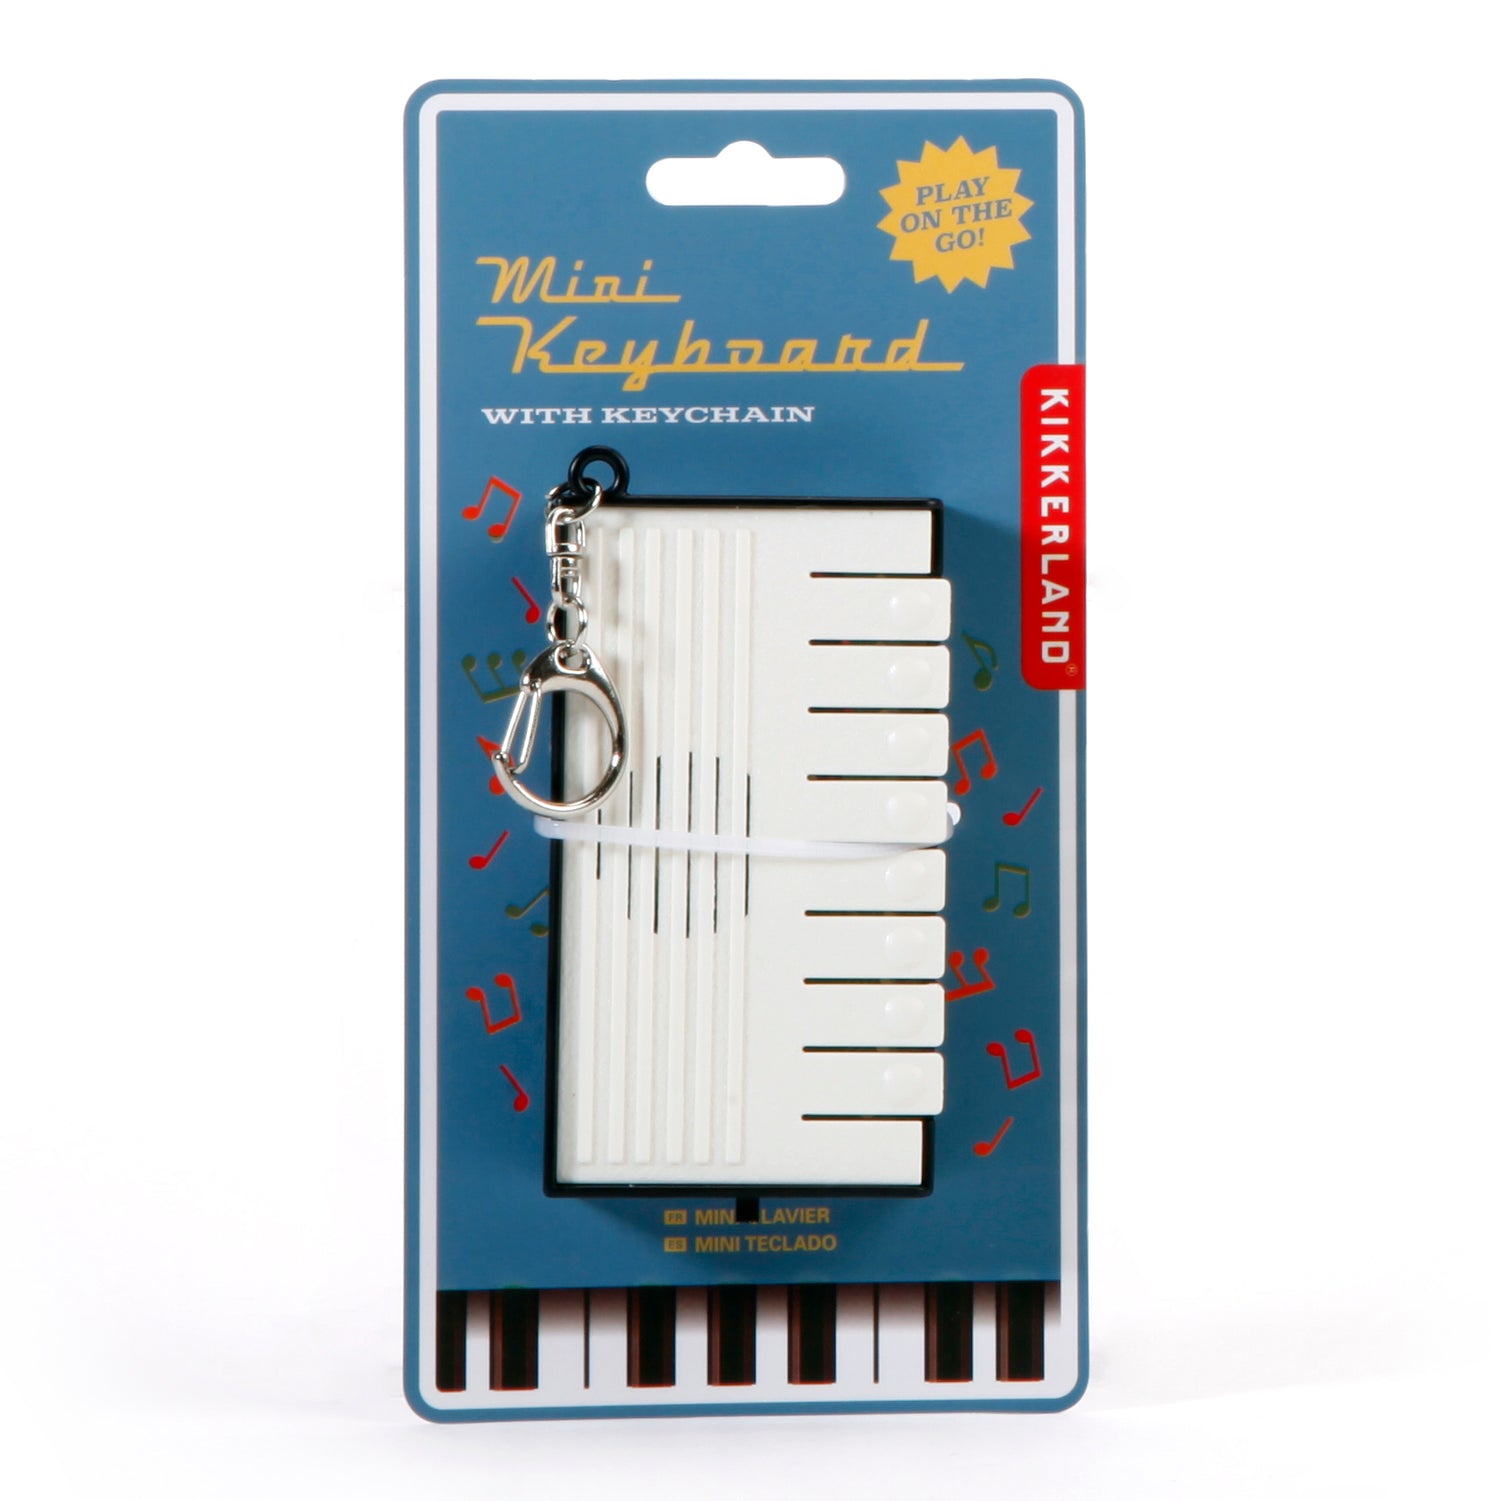 Porte-clés pour clavier mini piano en déplacement